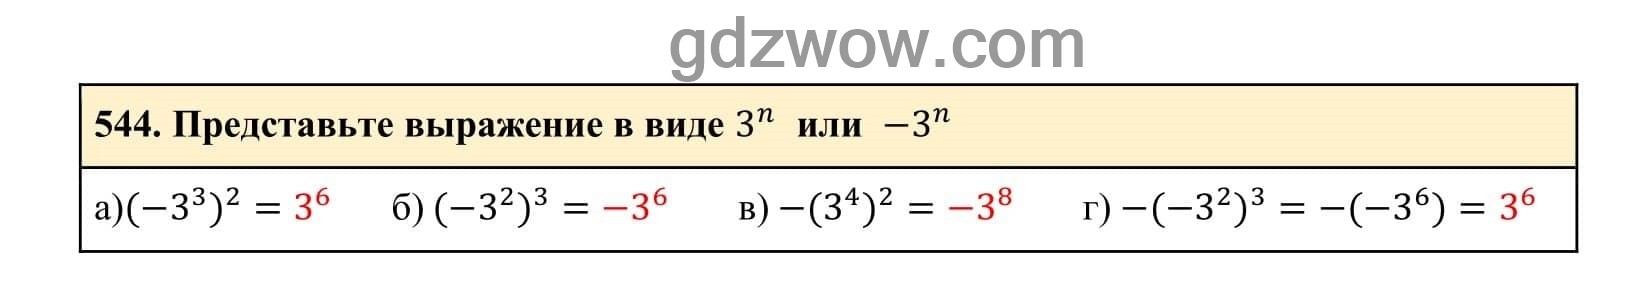 Упражнение 544 - ГДЗ по Алгебре 7 класс Учебник Макарычев (решебник) - GDZwow